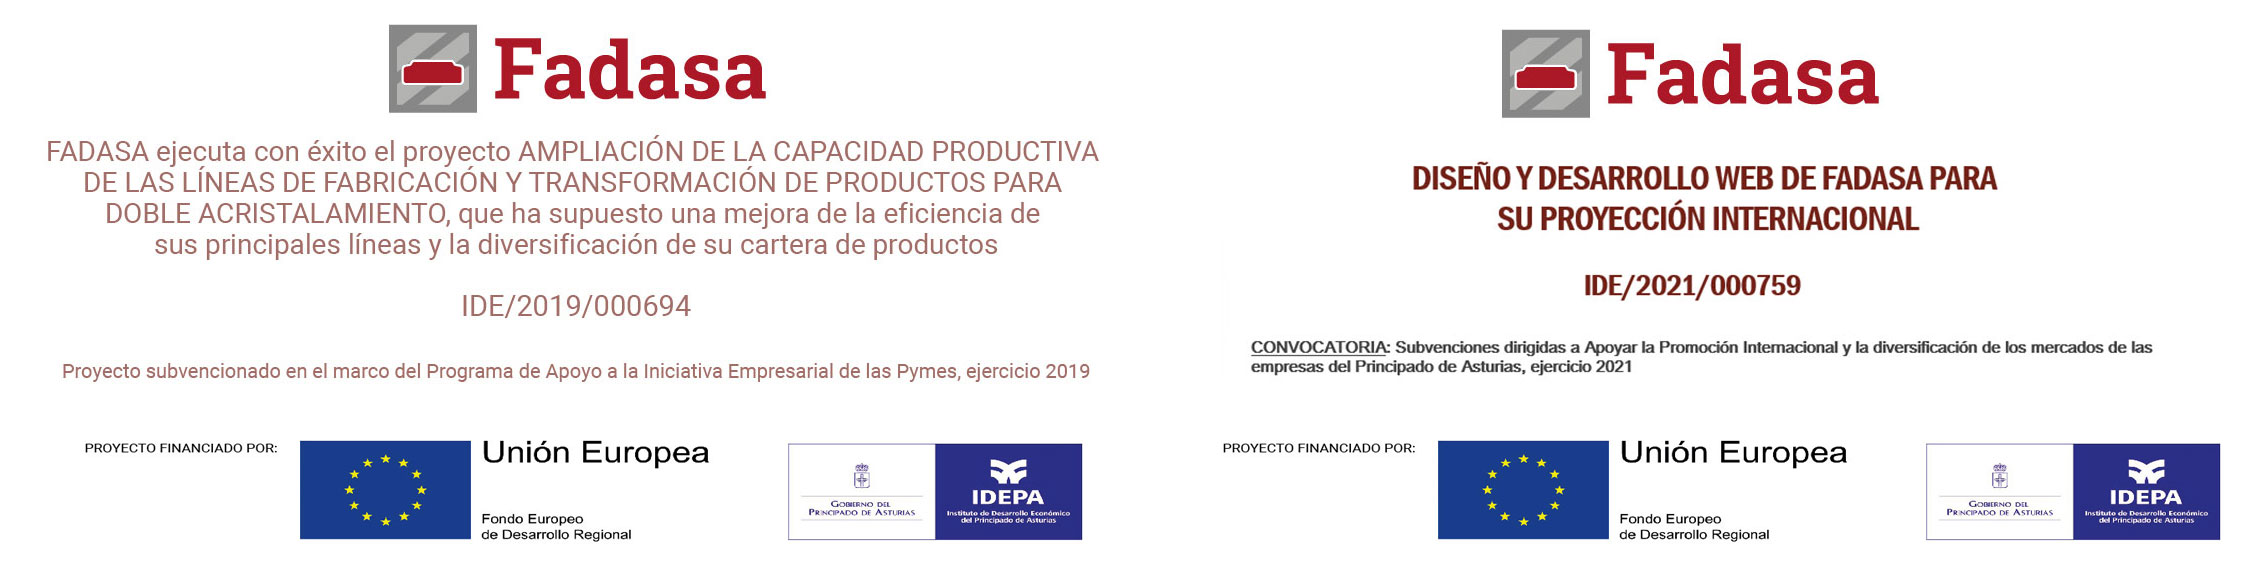 Proyecto subvencionado en el marco del Programa de Apoyo a la Iniciativa Empresarial de las Pymes, ejercicio 2019